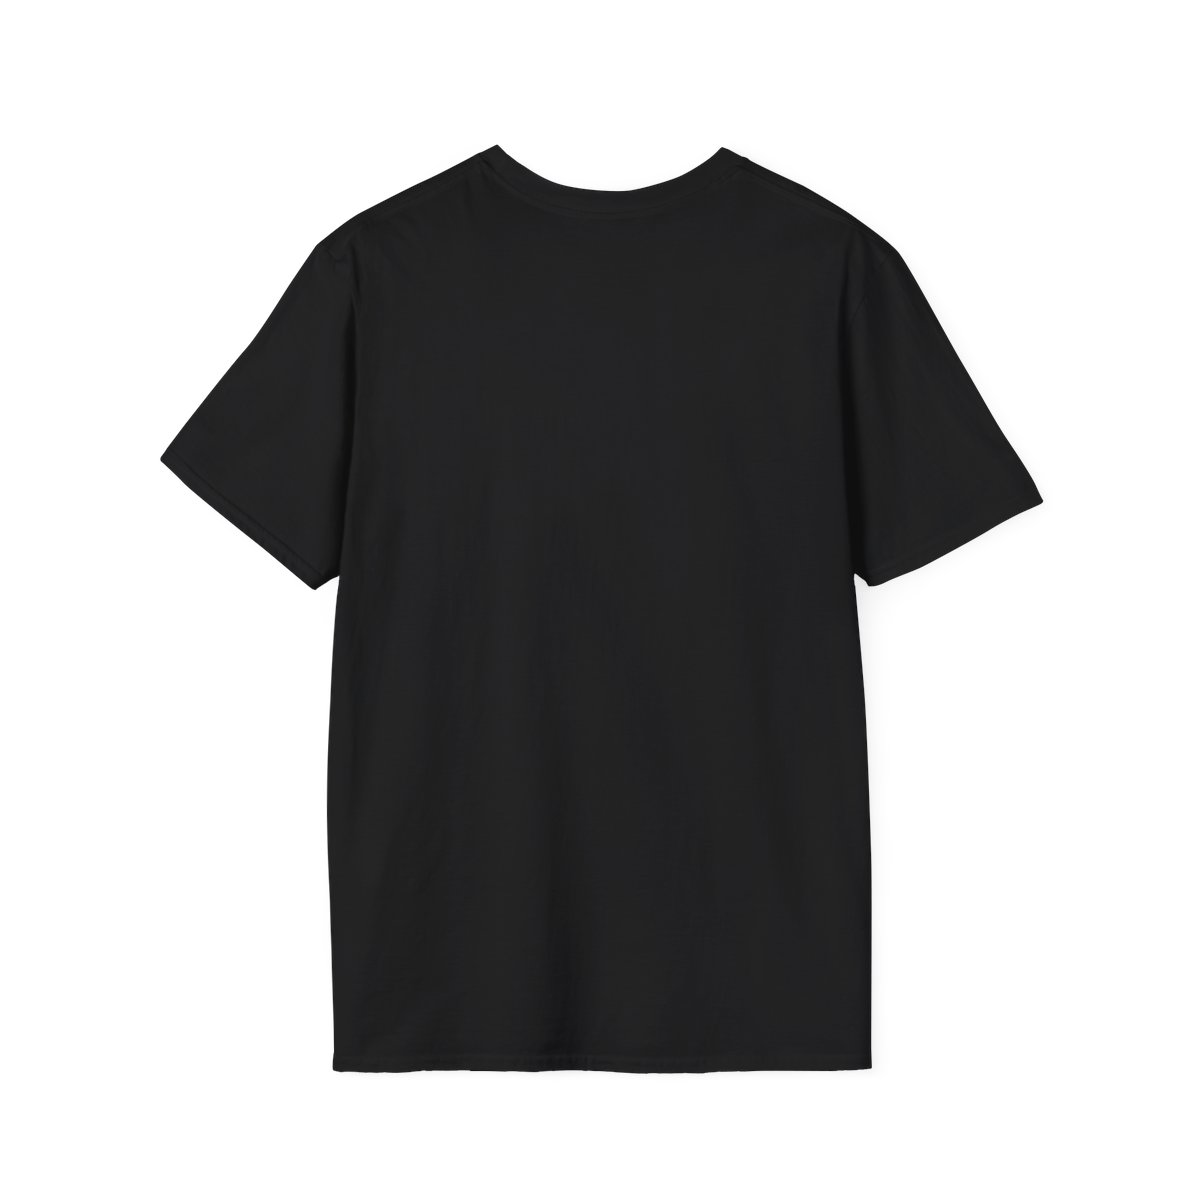 Joker & Penguin Unisex Softstyle T-Shirt product thumbnail image